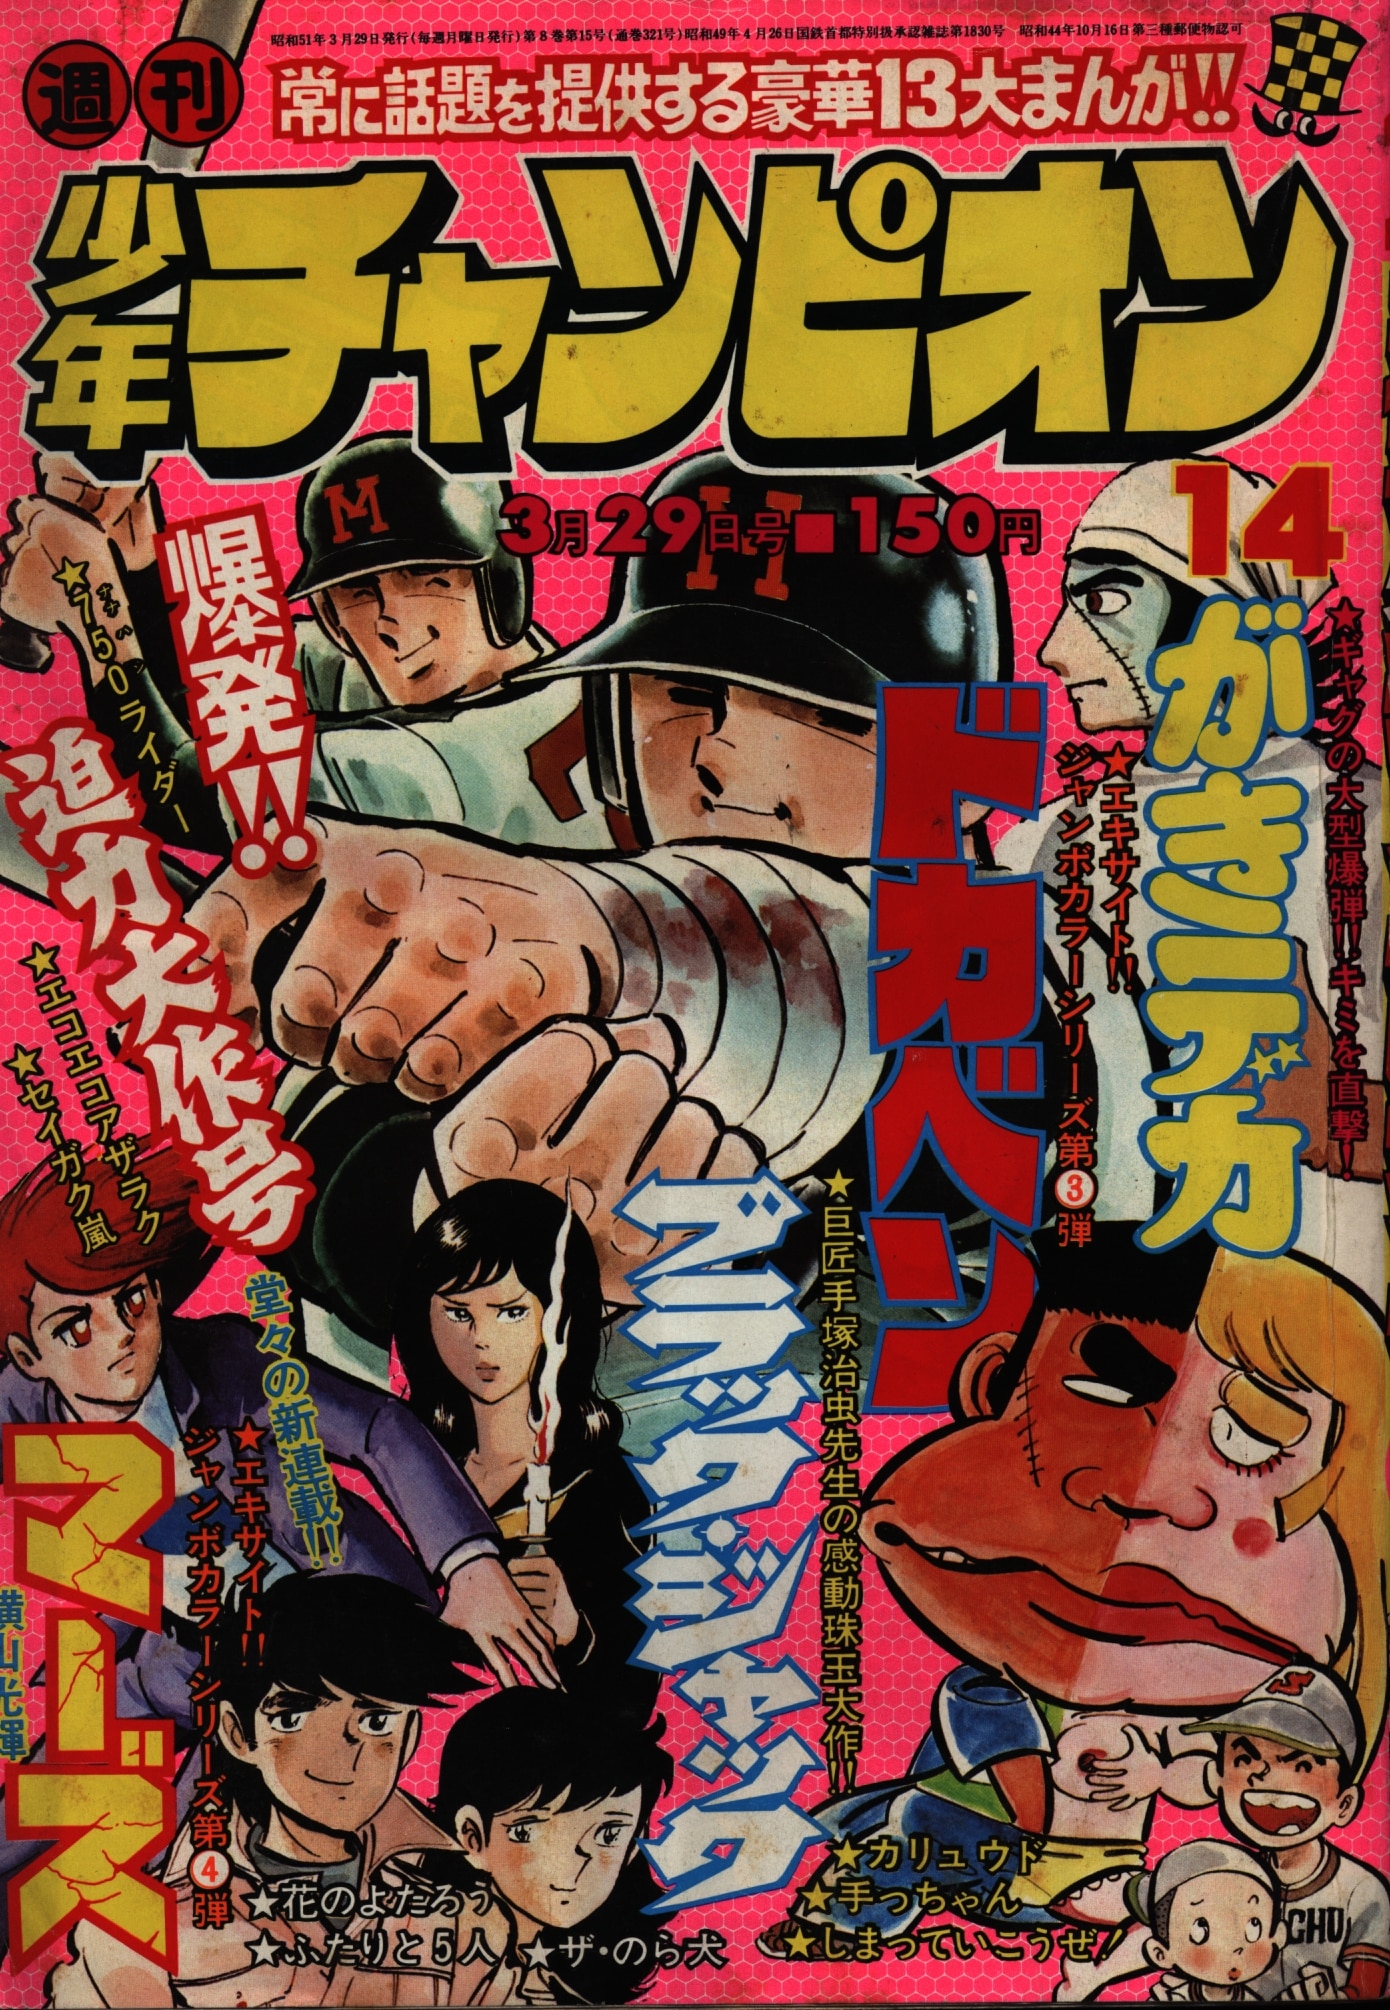 秋田書店 1976年(昭和51年)の漫画雑誌 週刊少年チャンピオン1976年(昭和51年)14 | ありある | まんだらけ MANDARAKE